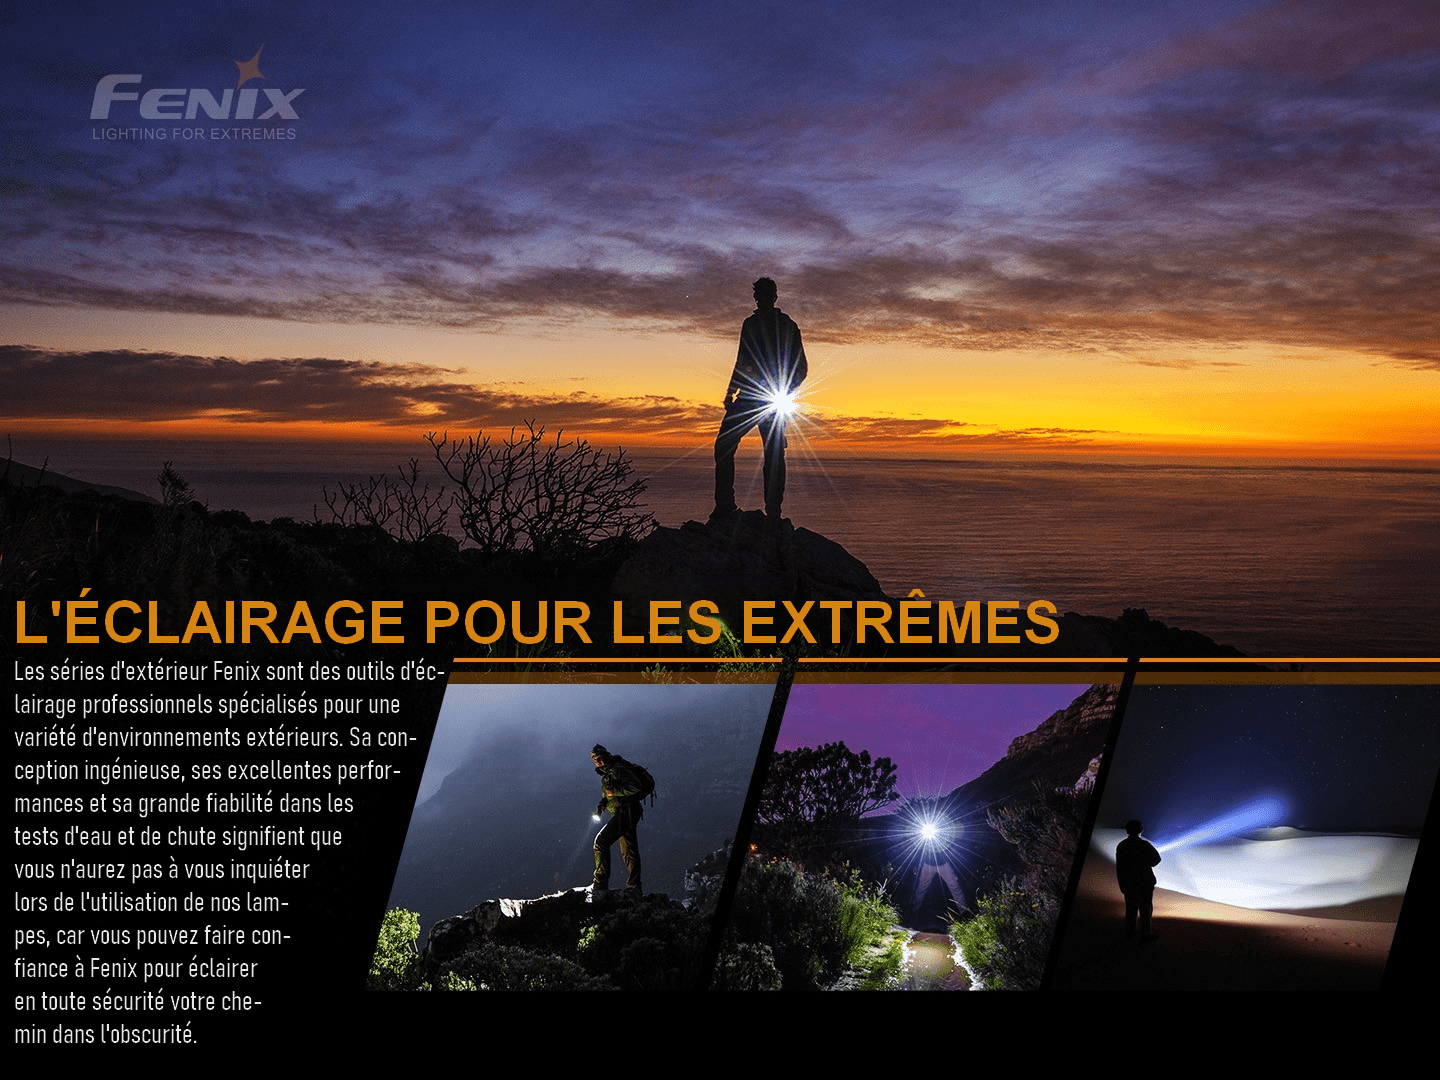 Fenix PD25R Rechargeable - Max 800 Lumens Revendeur Officiel Lampes FENIX depuis 2008 | Votre Boutique en ligne FENIX®